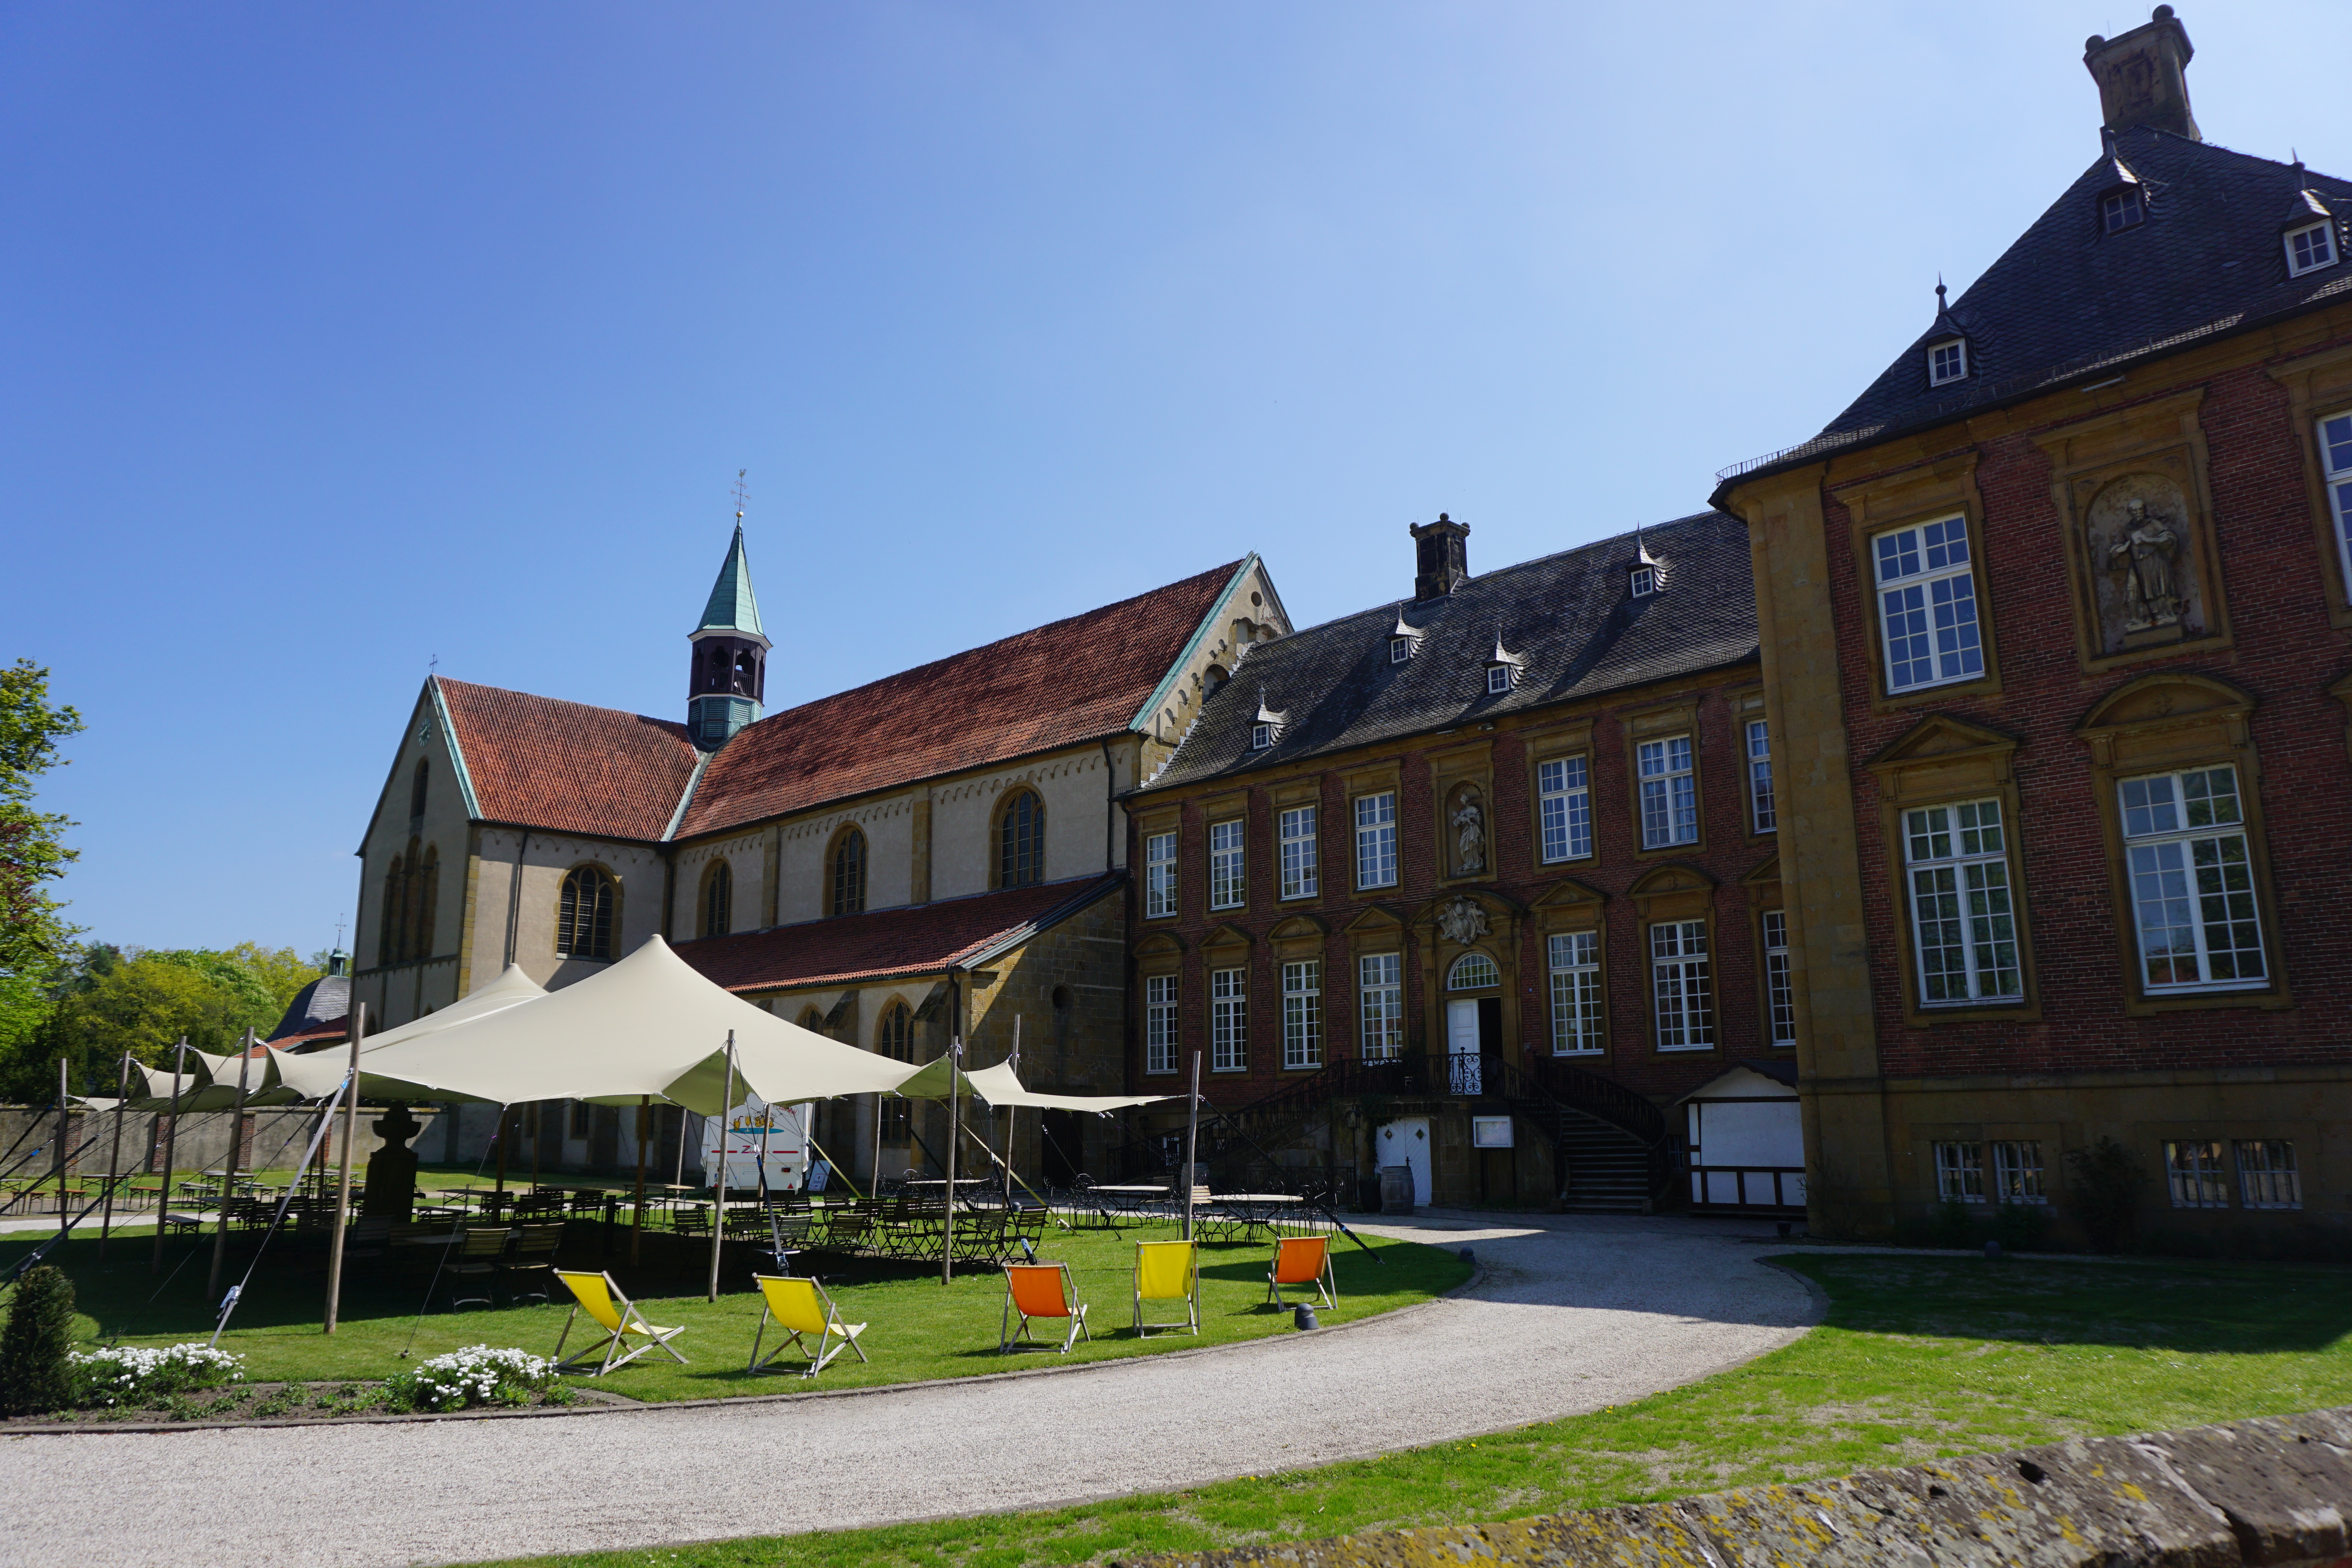 Impressionen Innenhof der Klosteranlage Marienfeld, Harsewinkel.
